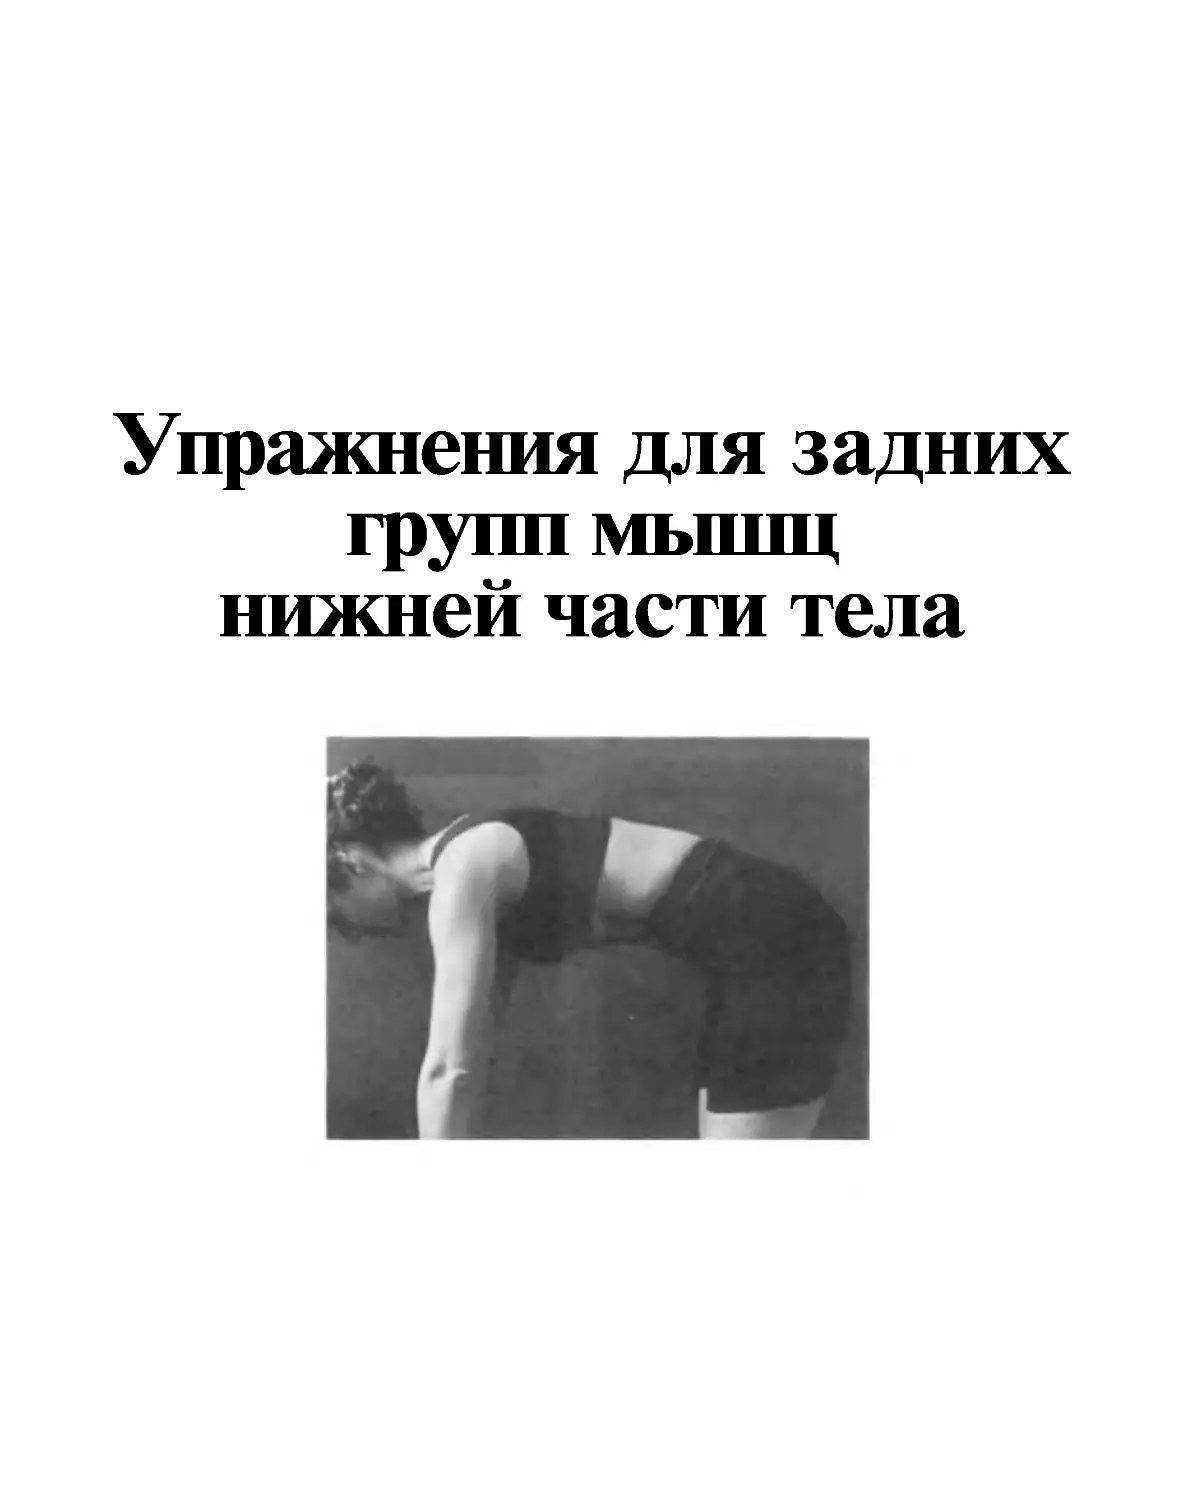 ﻿9. Упражнения для задних групп мышц нижней части тел